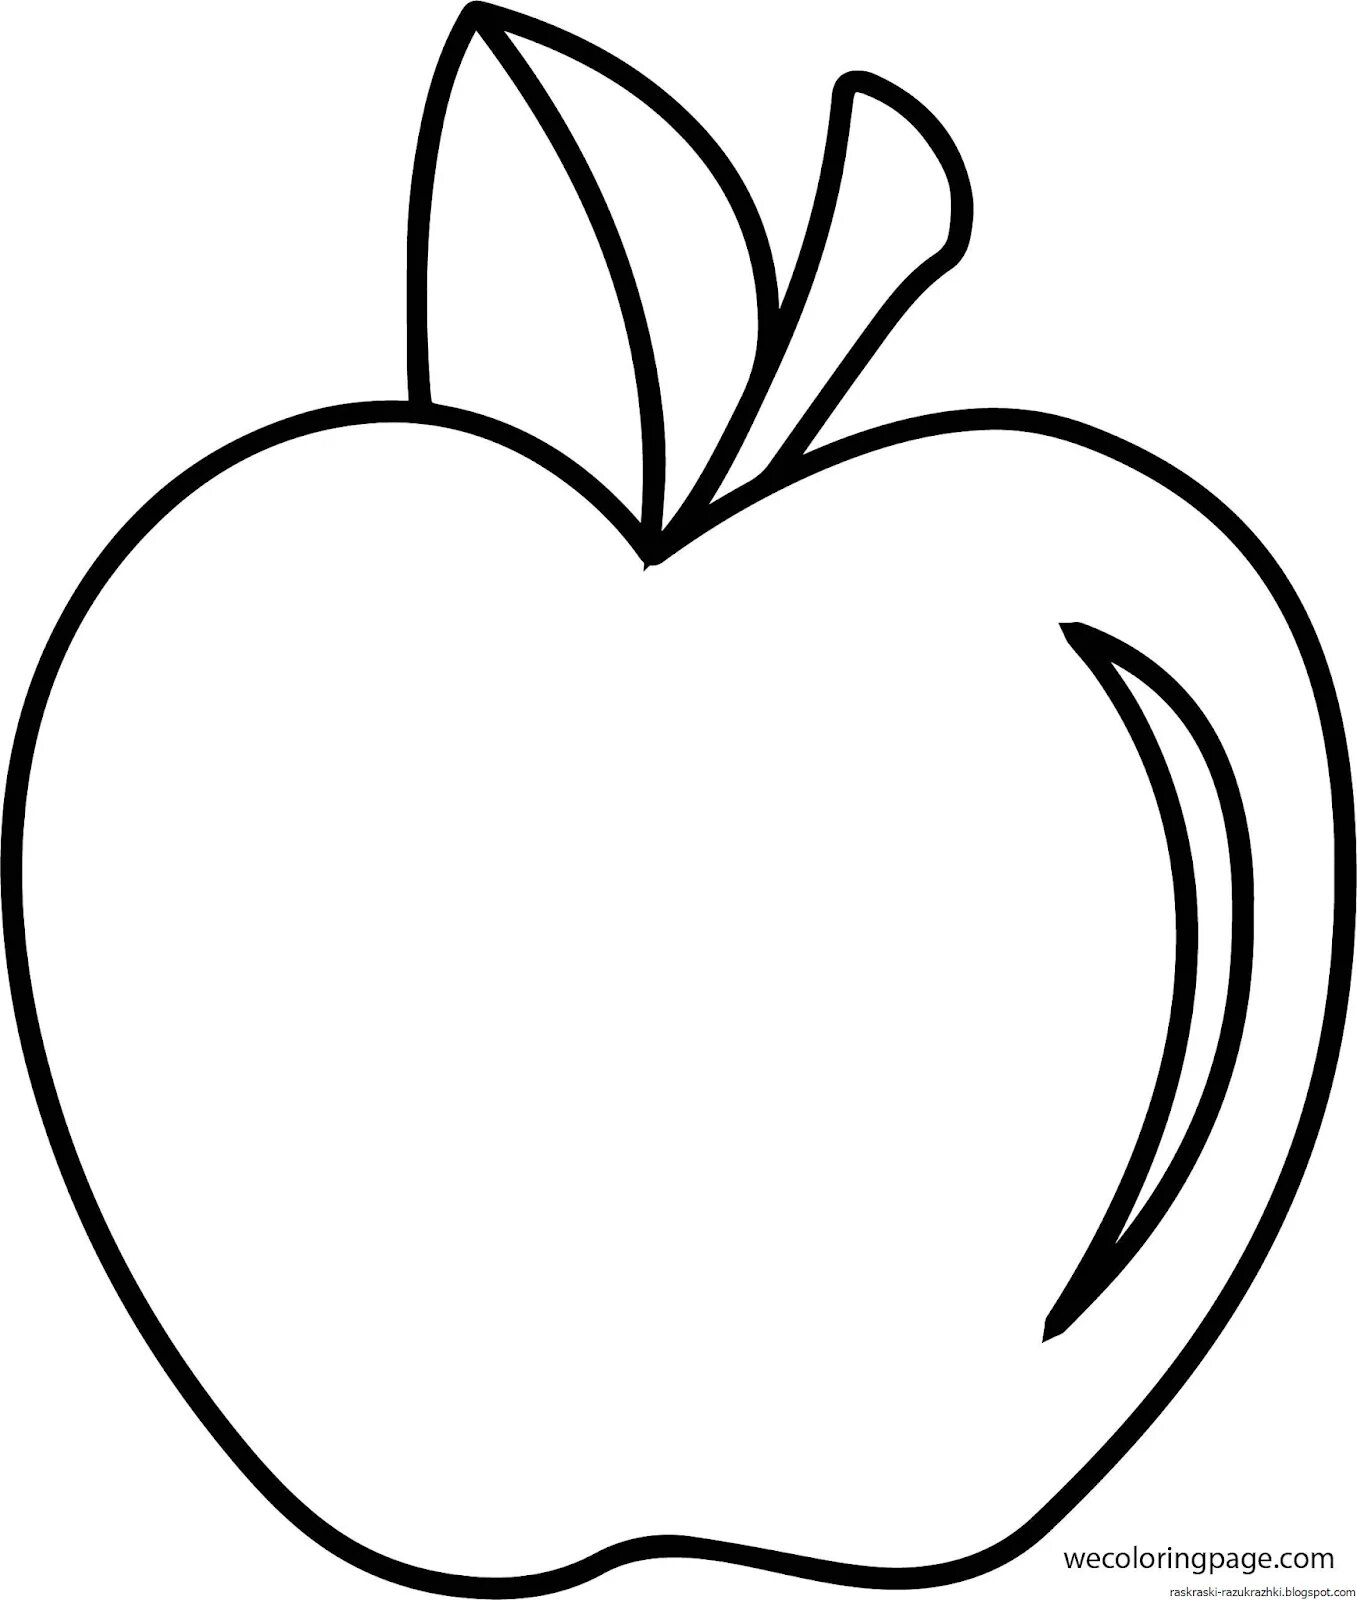 Раскраска 3 яблока. Яблоко раскраска. Яблоко раскраска для детей. Яблоко трафарет. Яблочко раскраска.